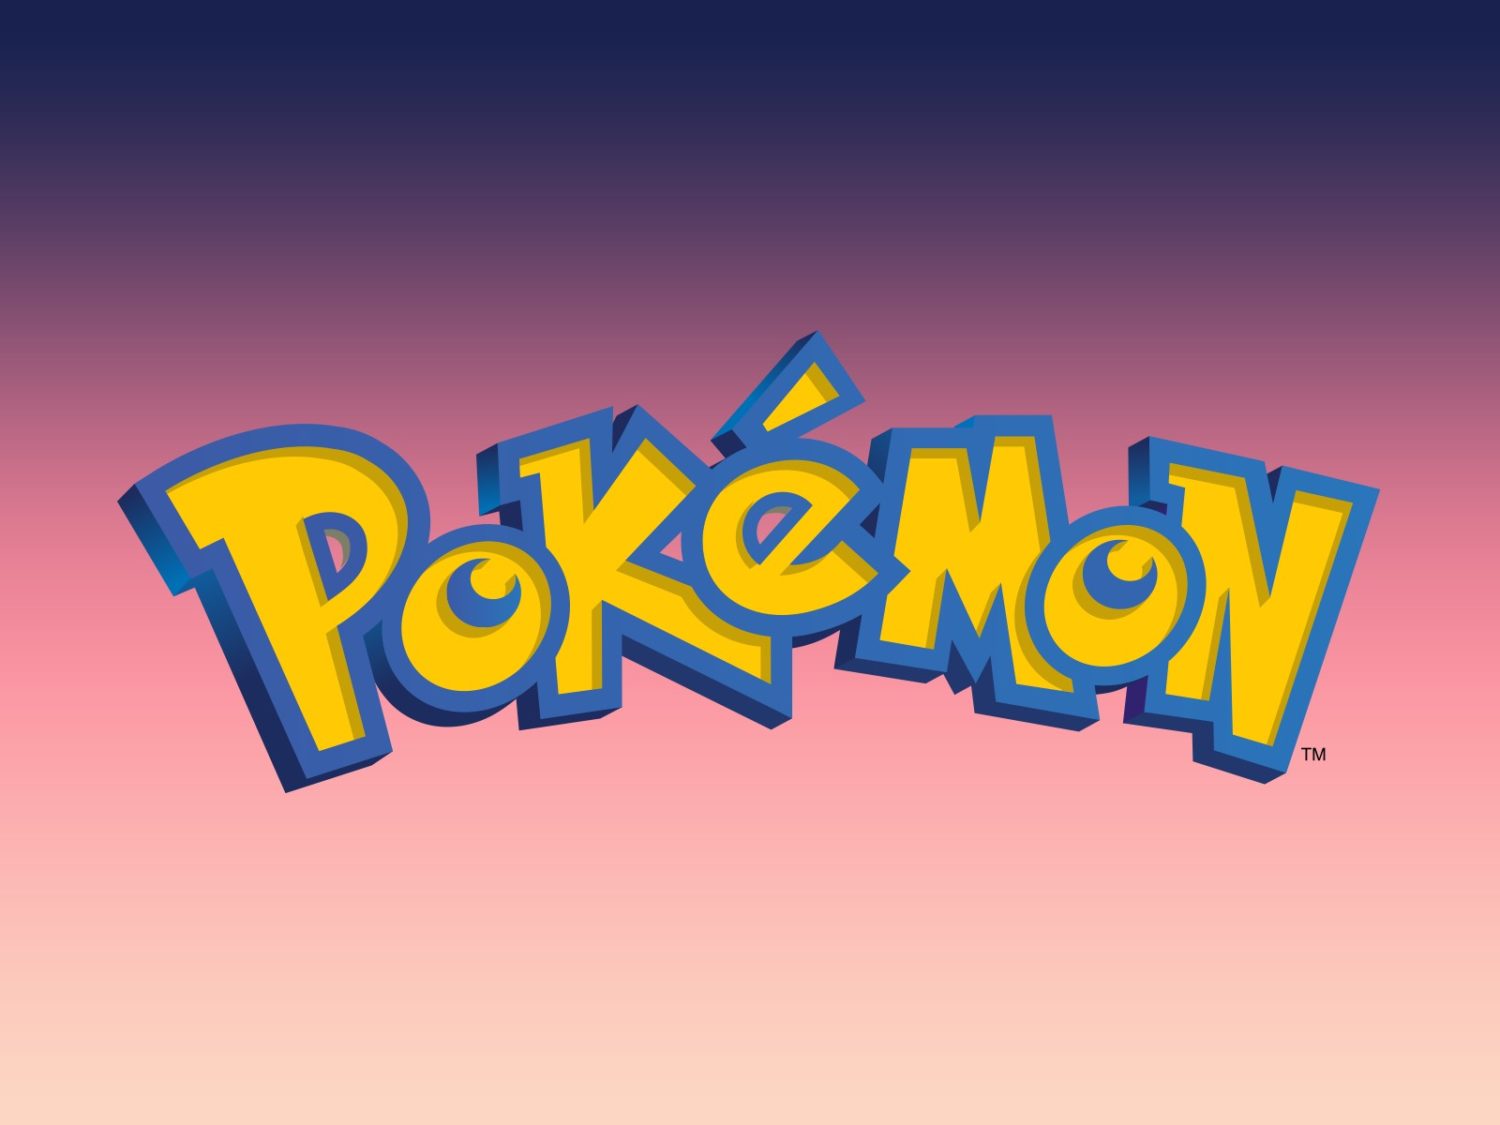 Opa! Vídeos privados de Pokémon aparecem em canais da Nintendo no